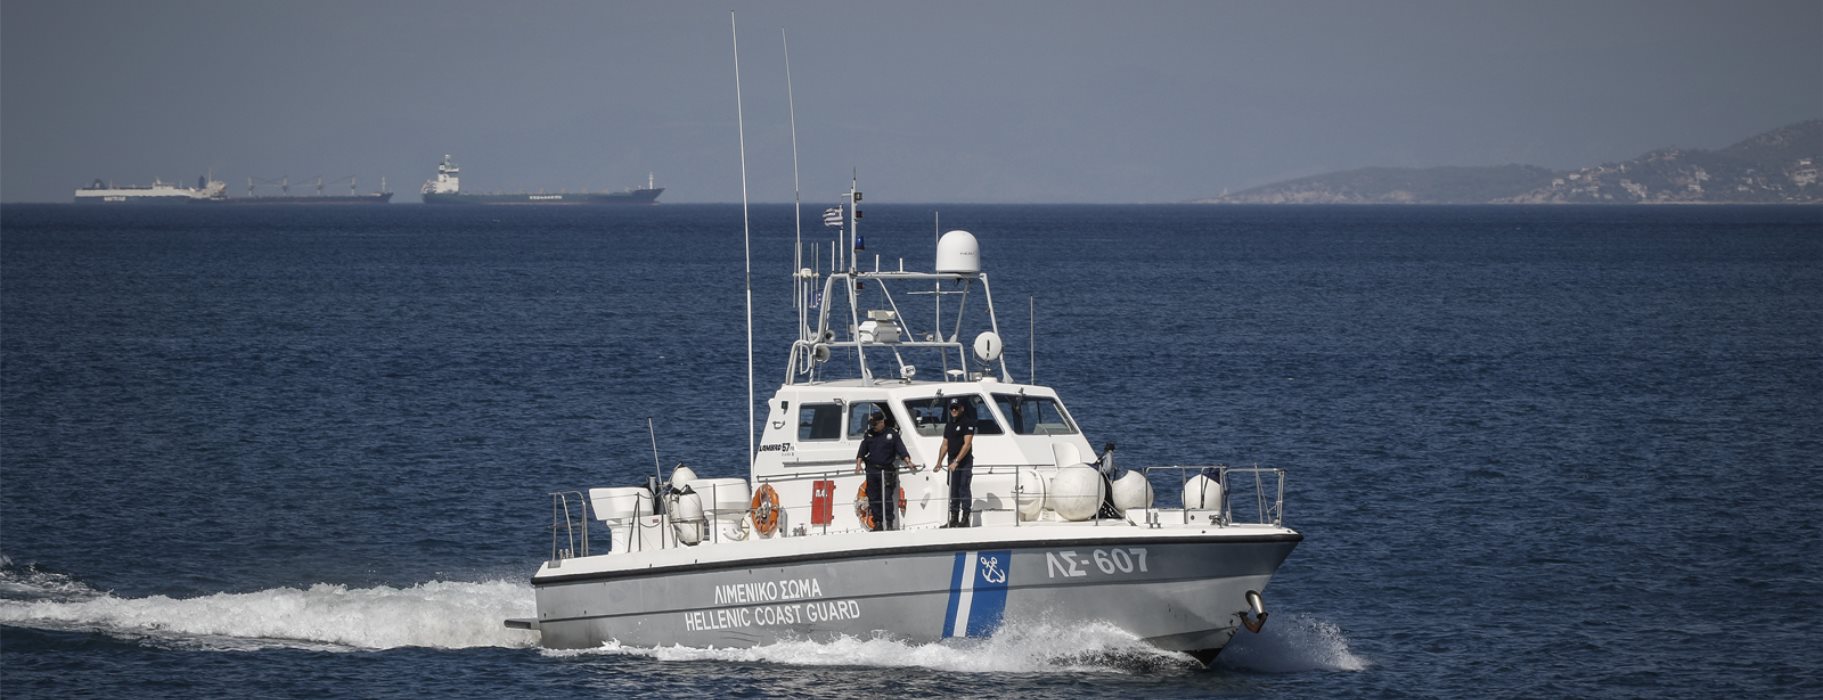 Βόλος: Αναποδογύρισε βάρκα από τον αέρα – Στη θάλασσα τρεις νέοι